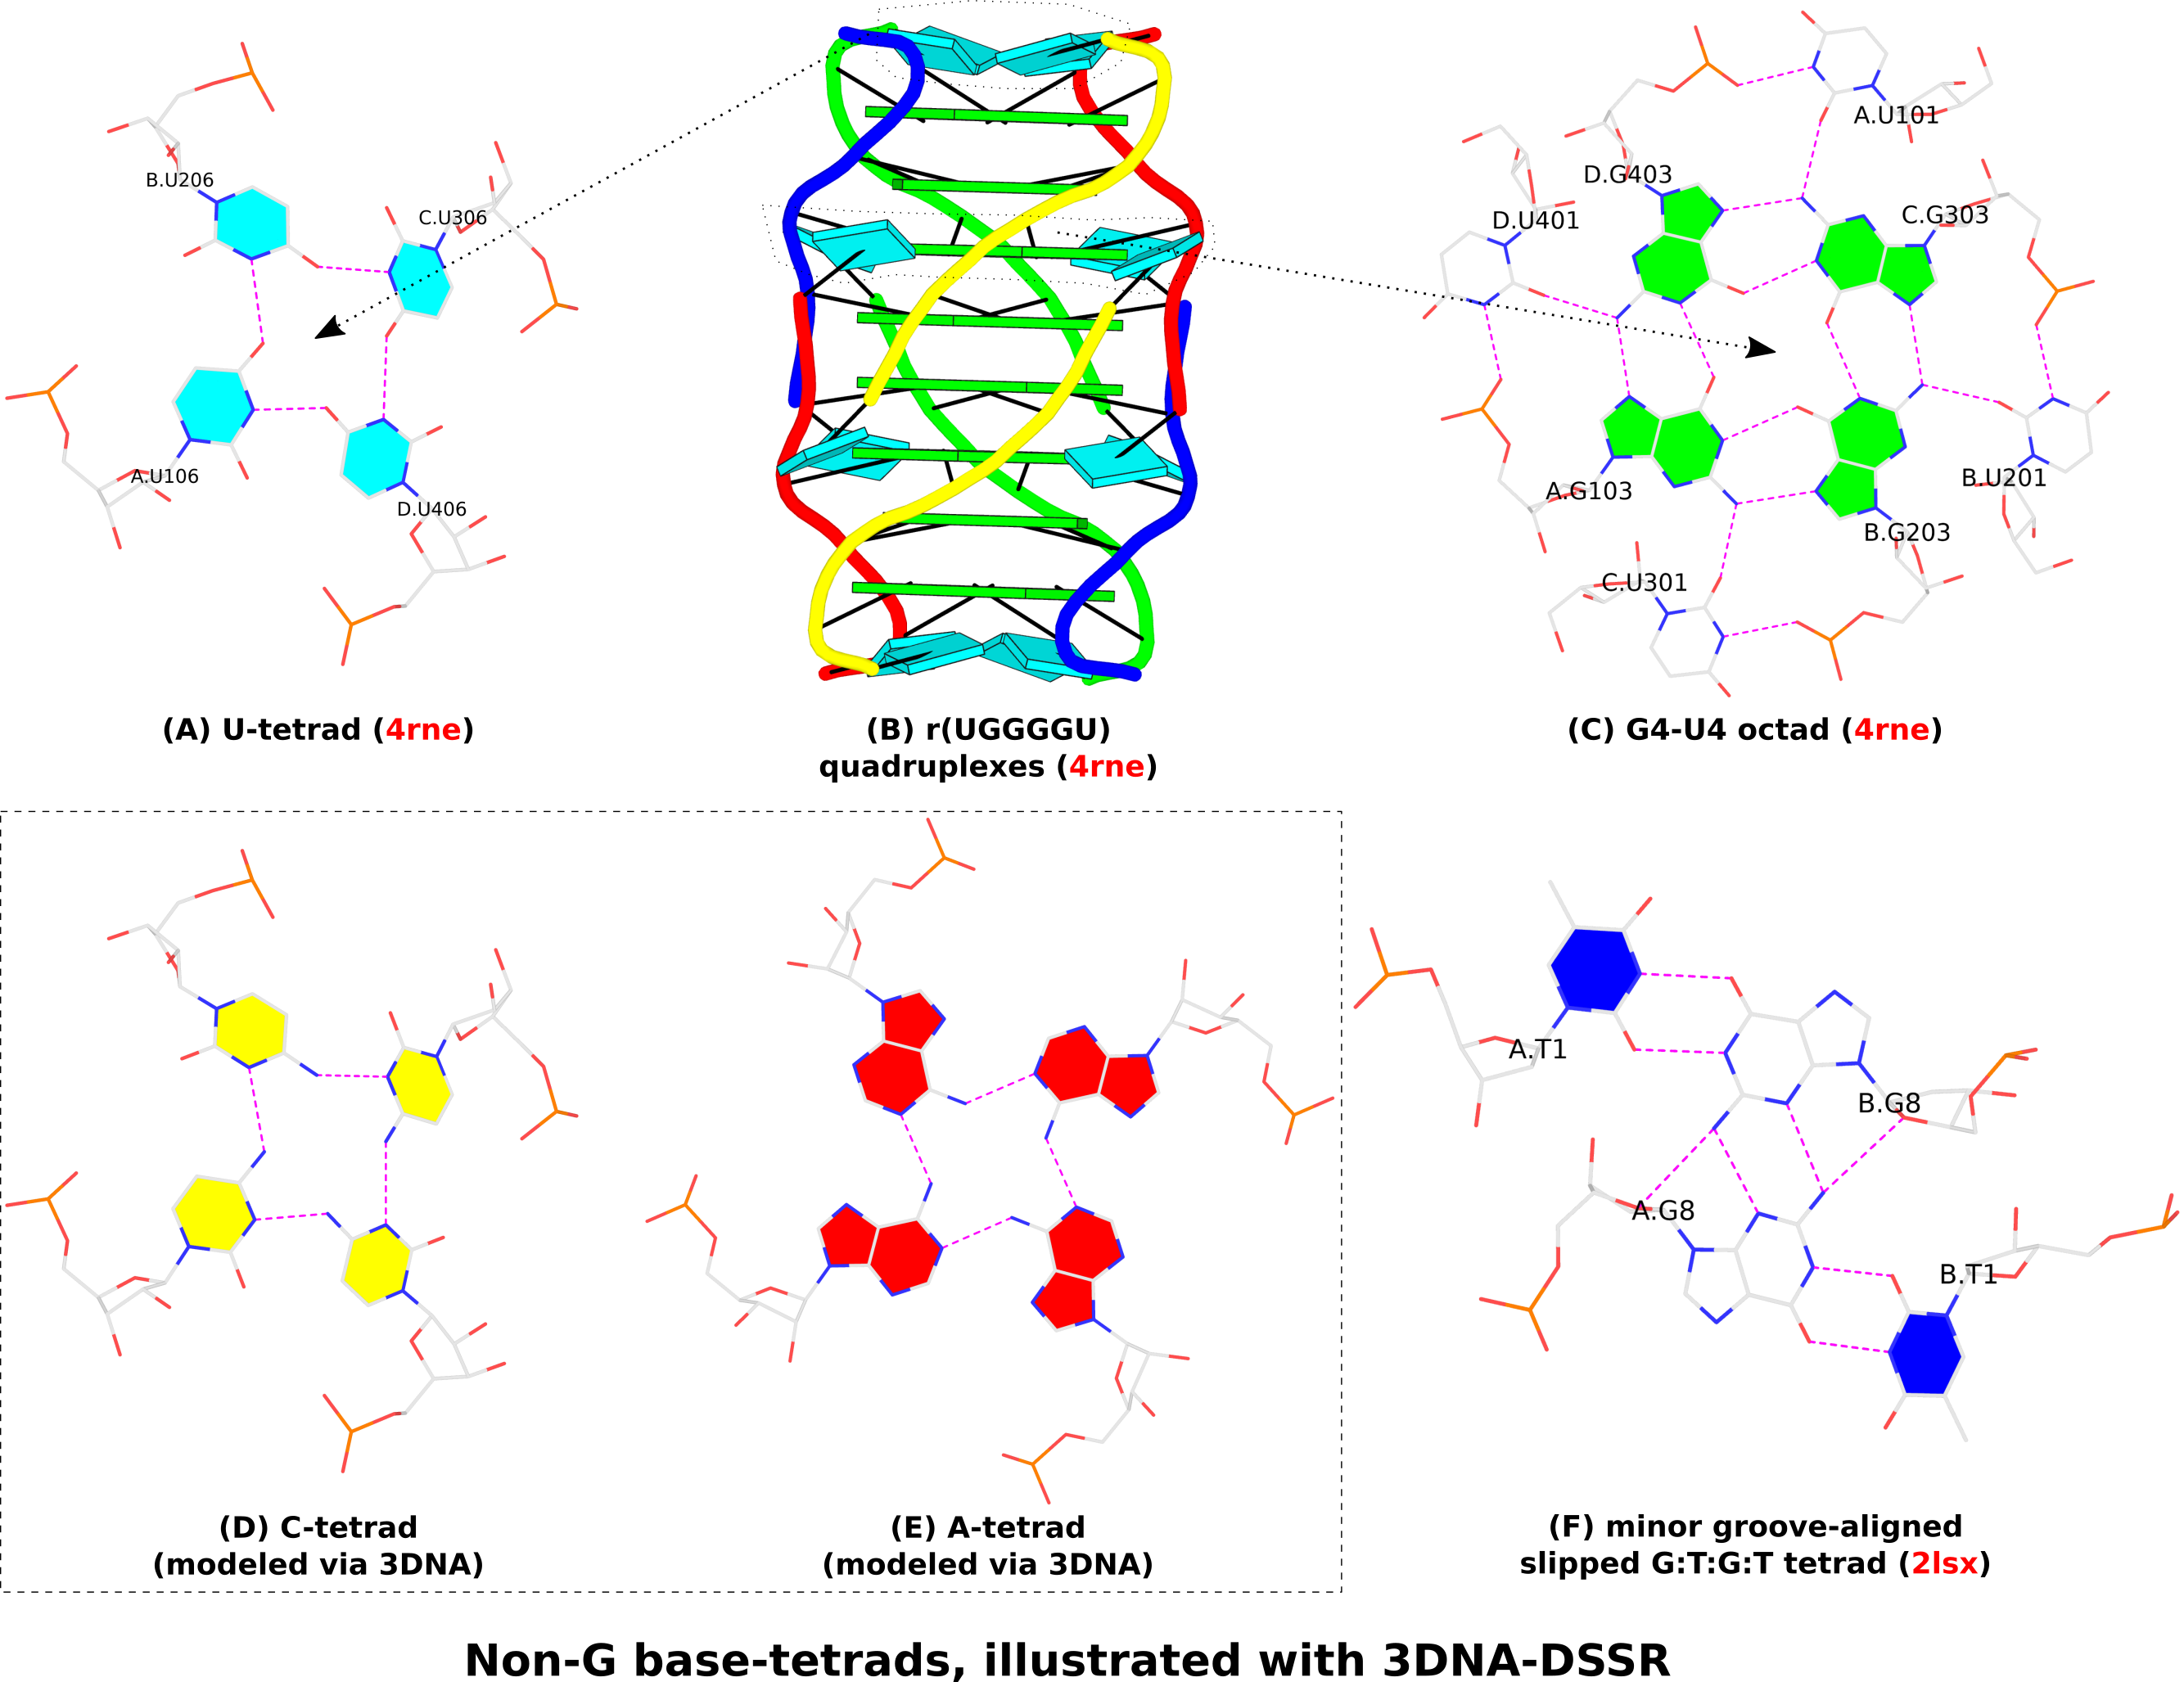 DSSR-derived non-G base tetrads